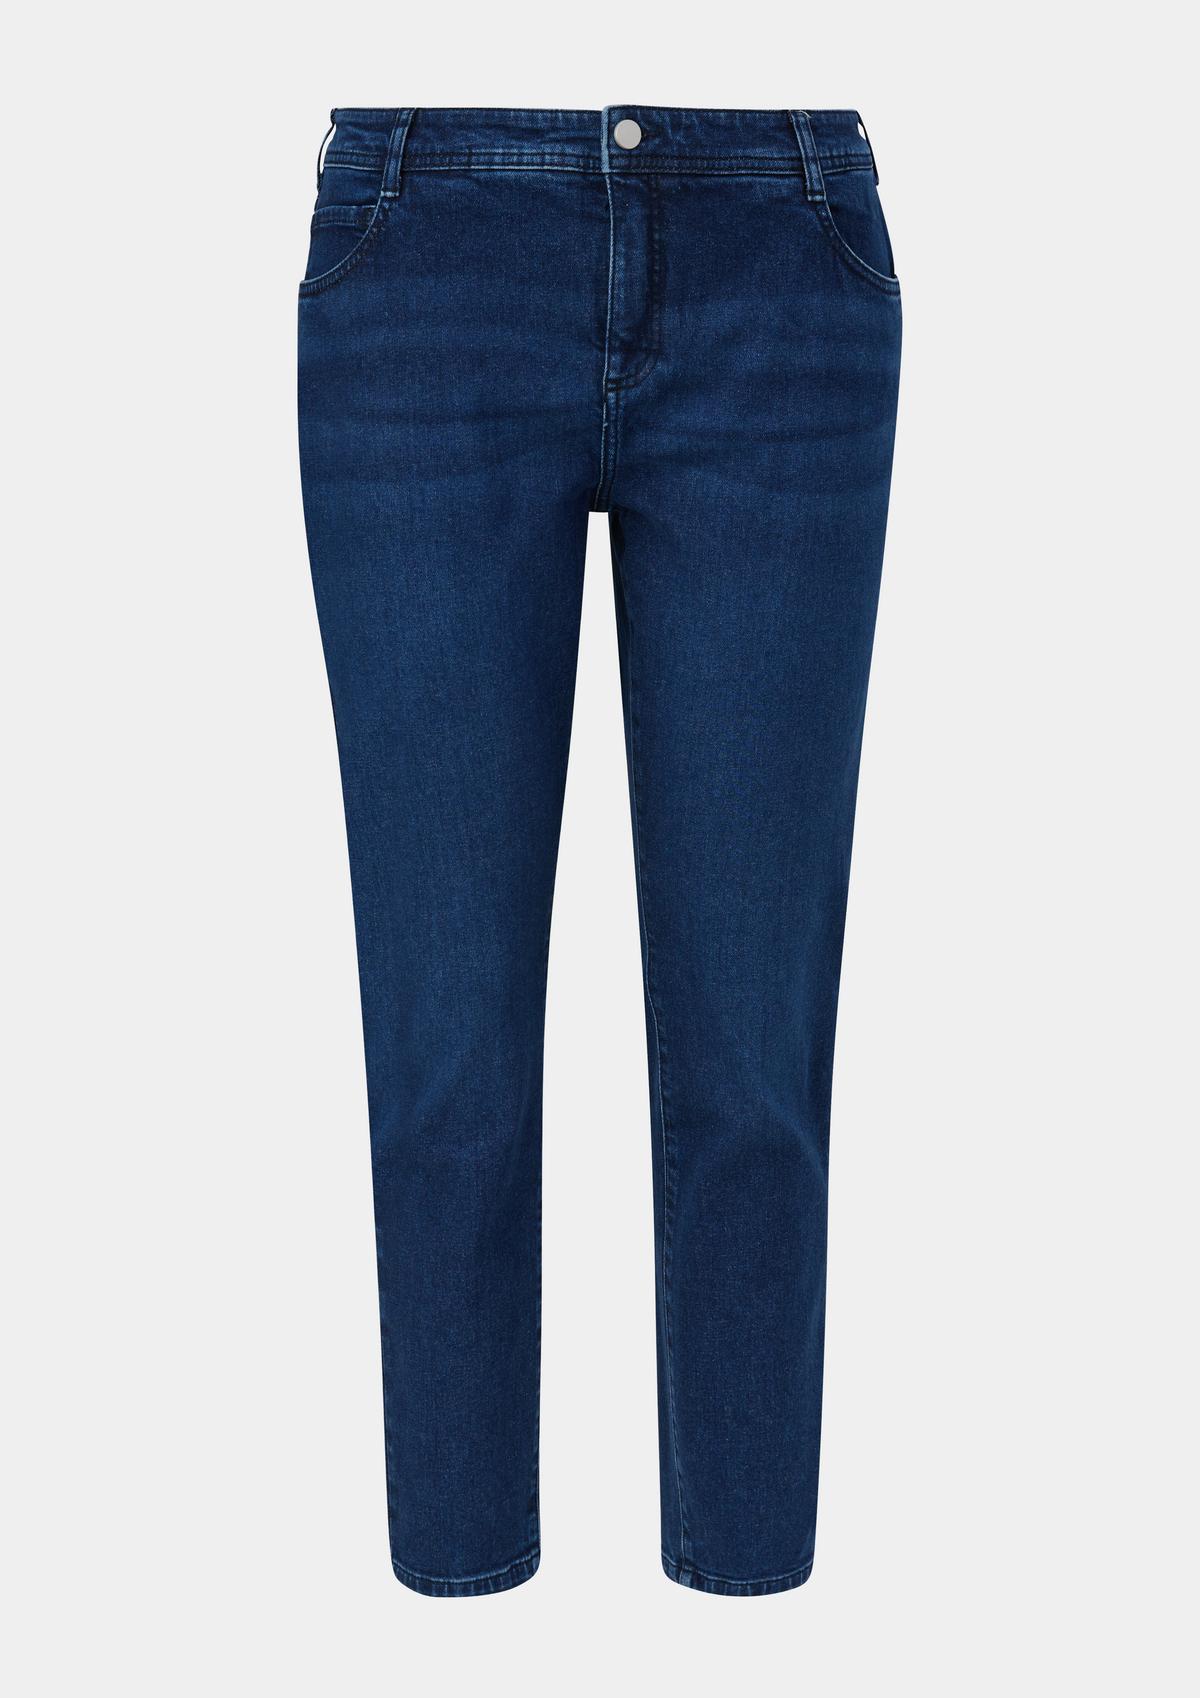 | design rise fit Jeans s. leg / blue skinny Oliver / / / - skinny five-pocket mid